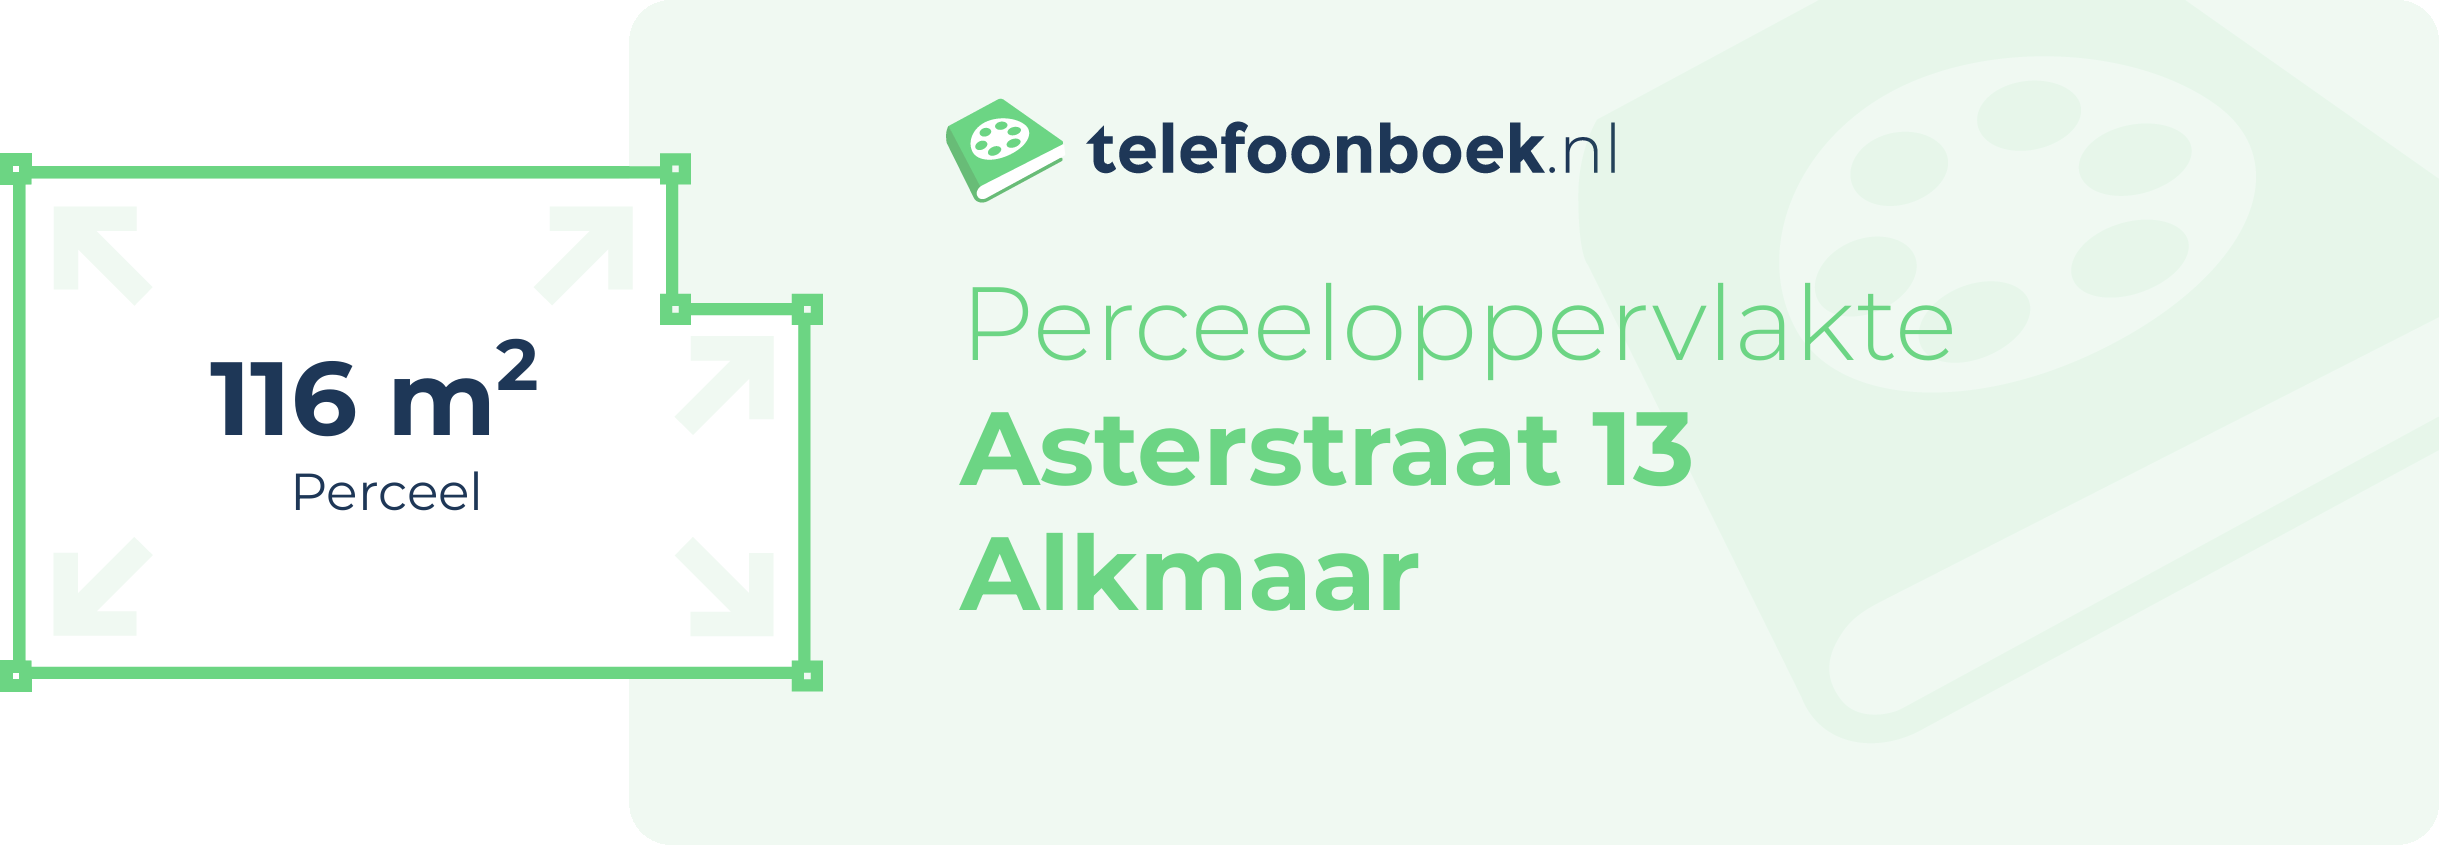 Perceeloppervlakte Asterstraat 13 Alkmaar